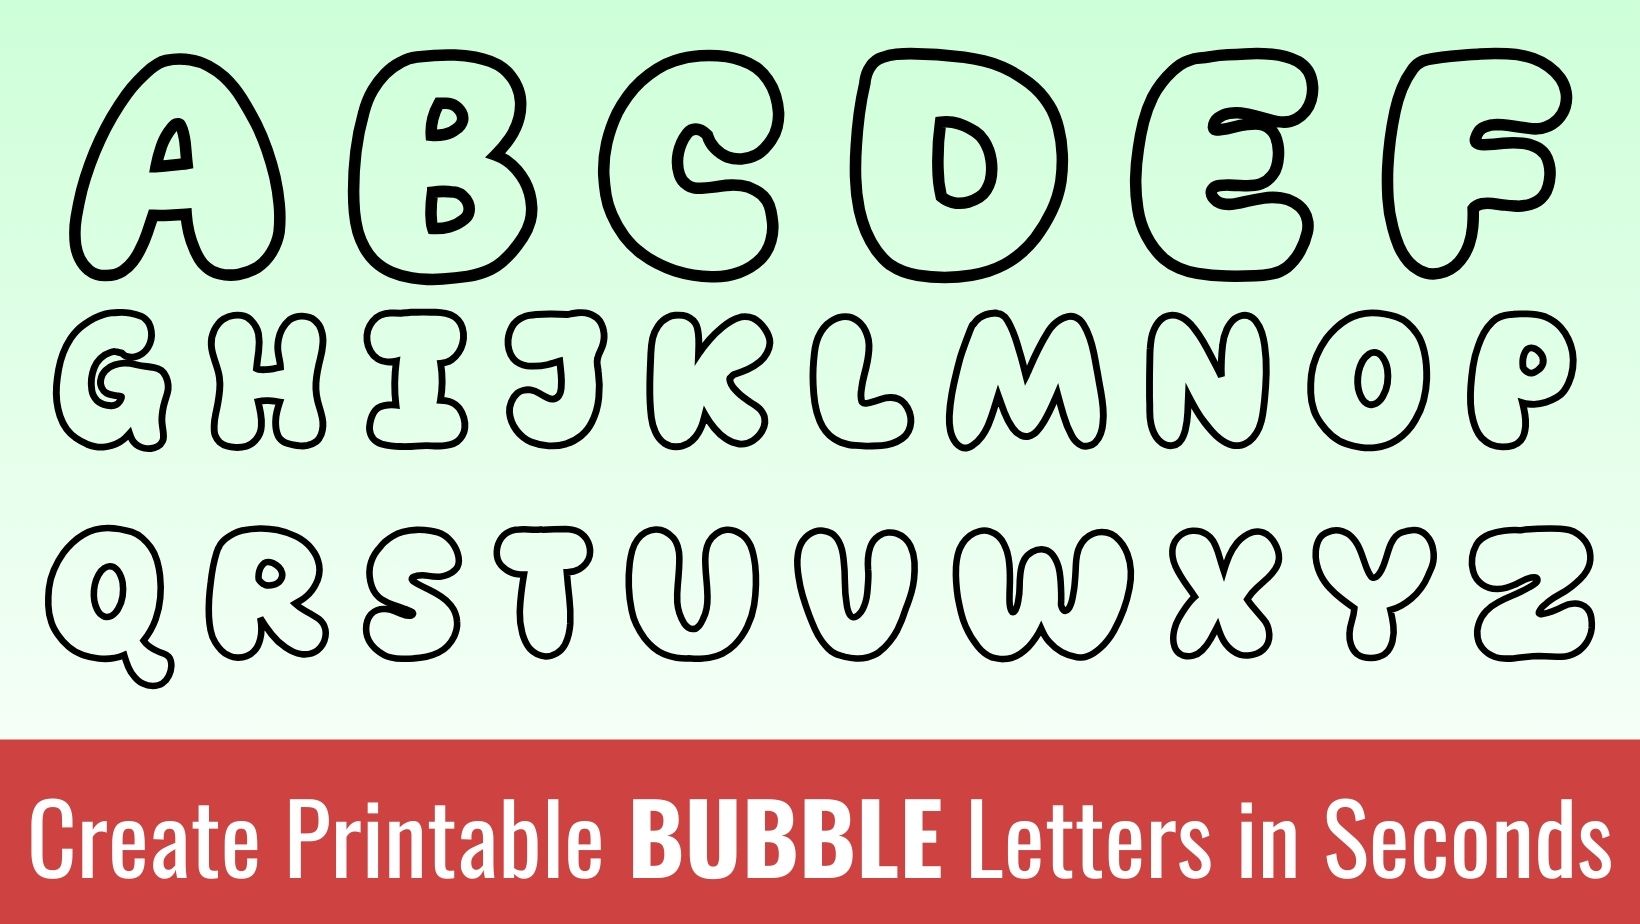 Bubble Letters the Alphabet, Bubble Letters Alphabet